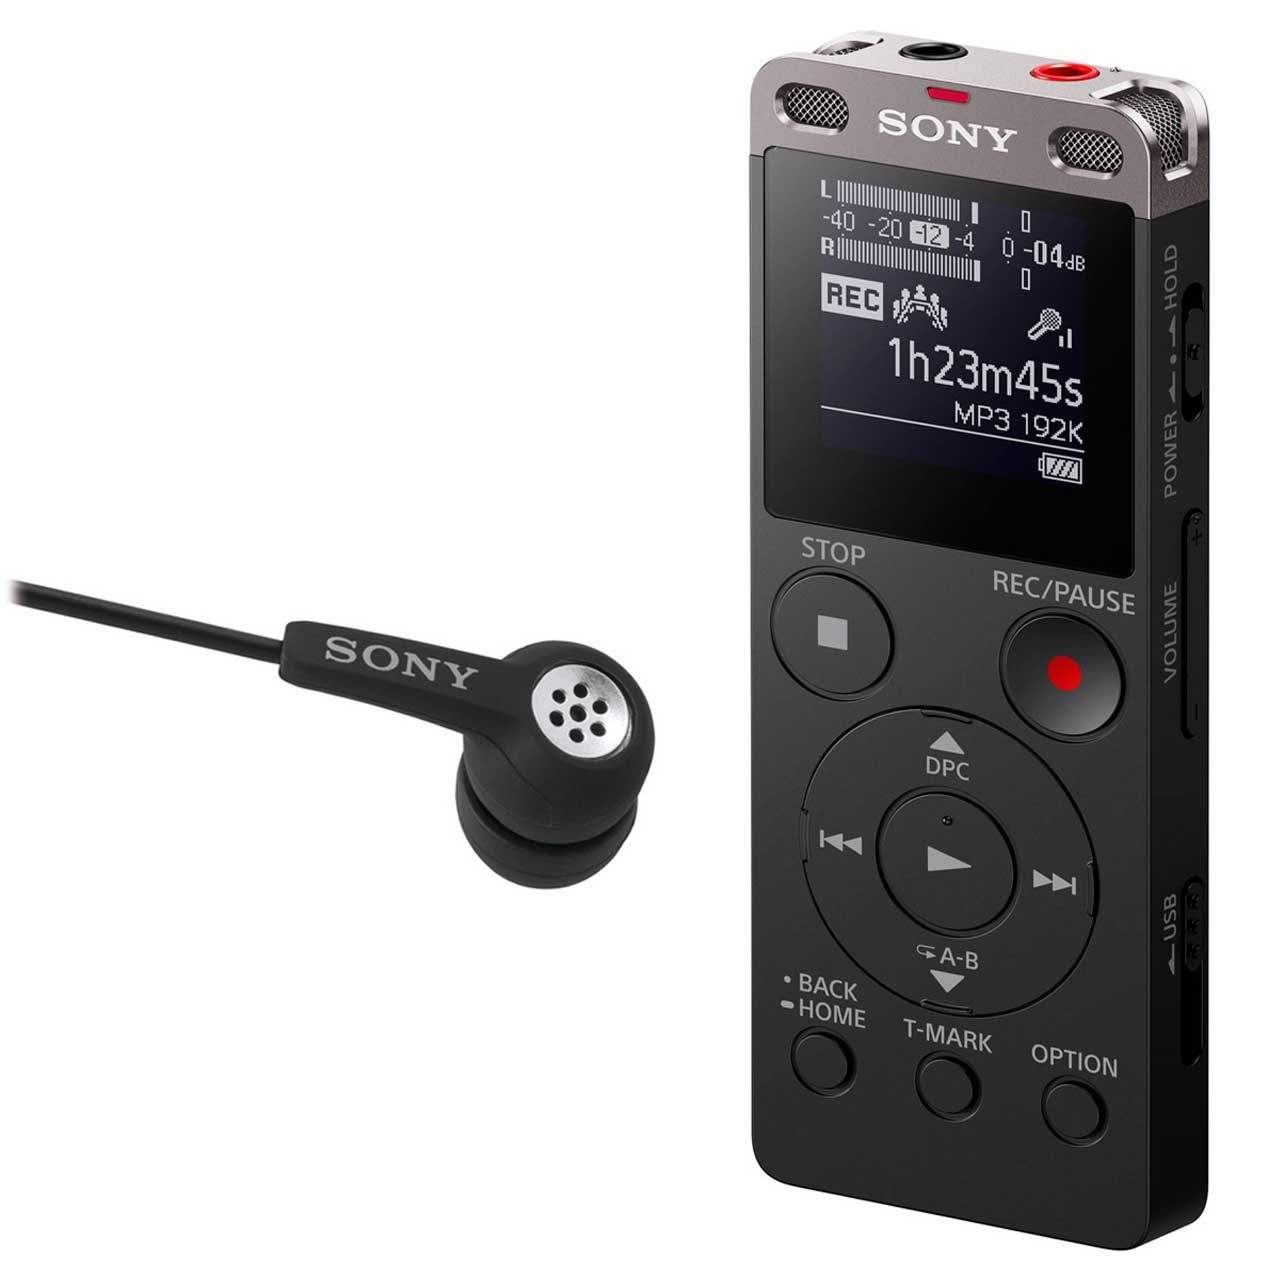 ضبط کننده صدا سونی مدل ICD-UX560F به همراه ایرفون سونی مدل ECM-TL02